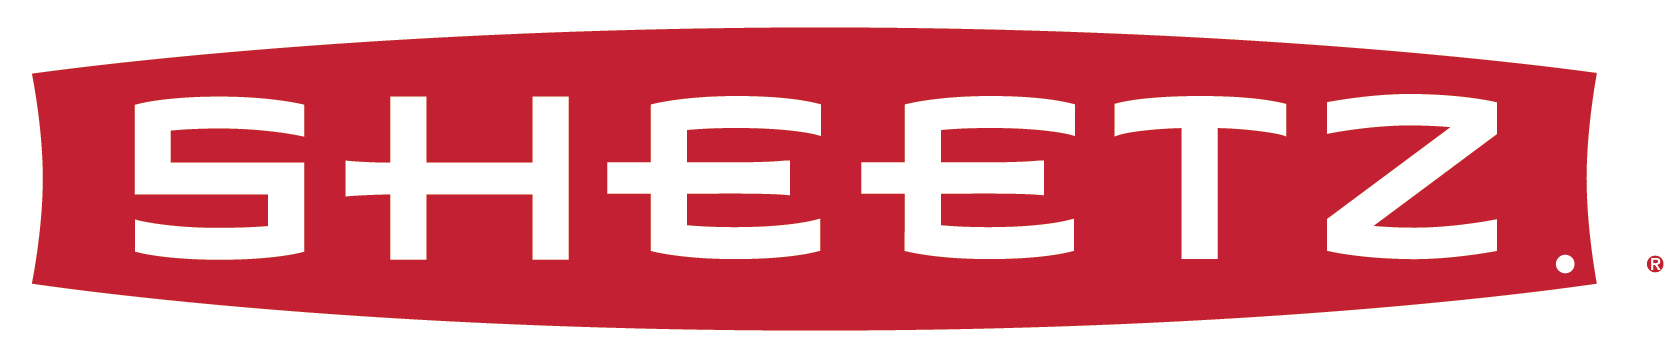 Sheet Brand Logo